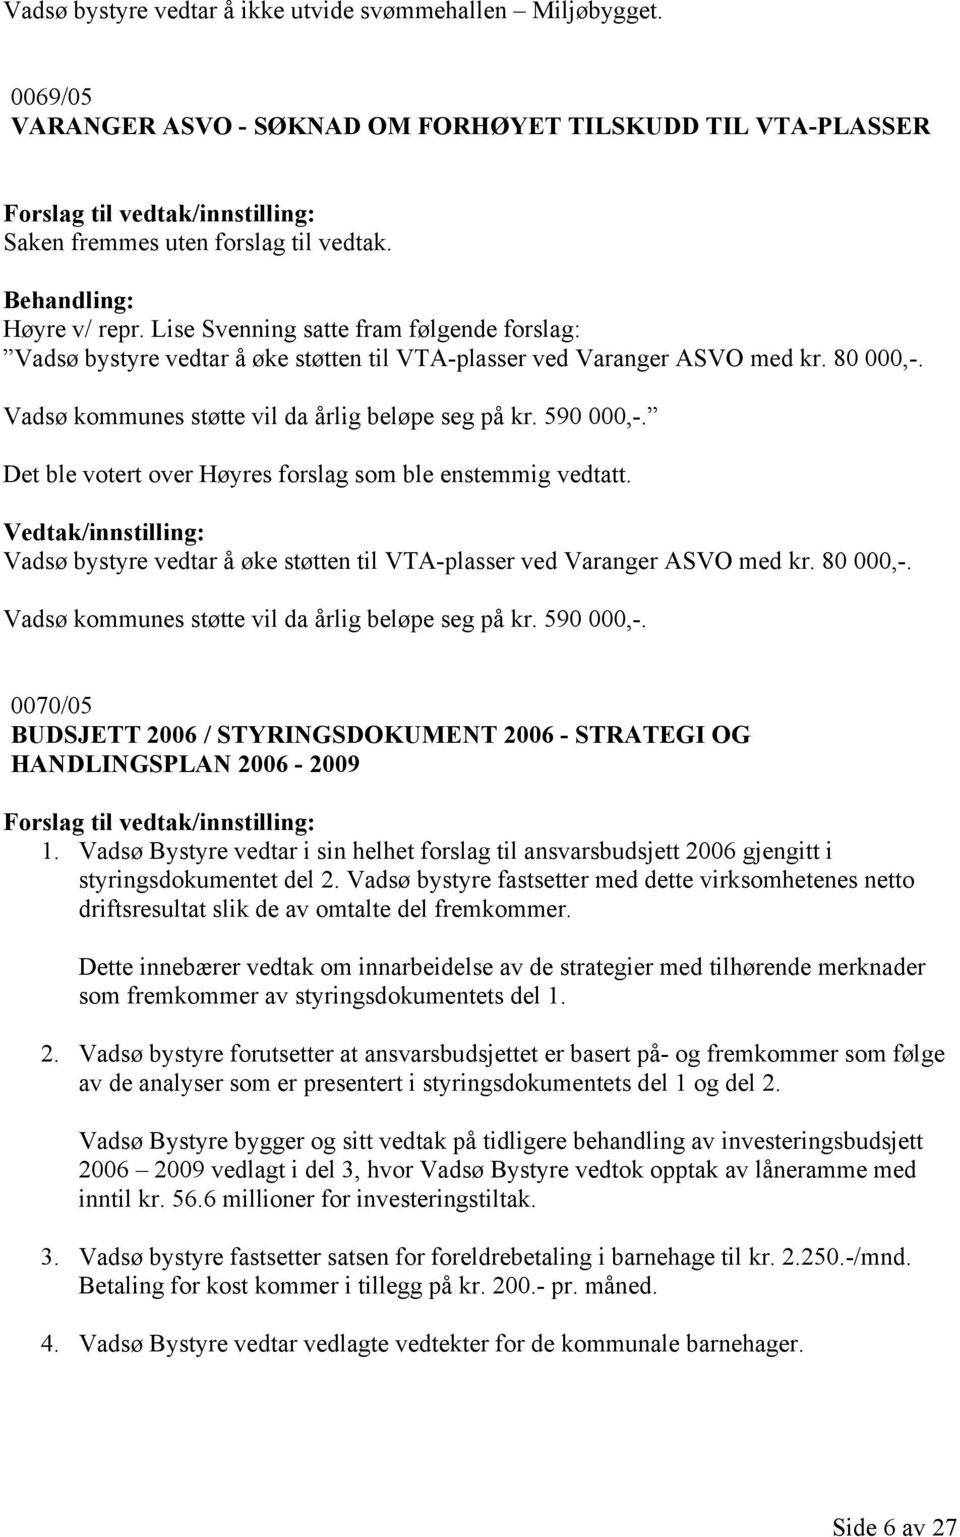 Det ble votert over Høyres forslag som ble enstemmig vedtatt. Vadsø bystyre vedtar å øke støtten til VTA-plasser ved Varanger ASVO med kr. 80 000,-.